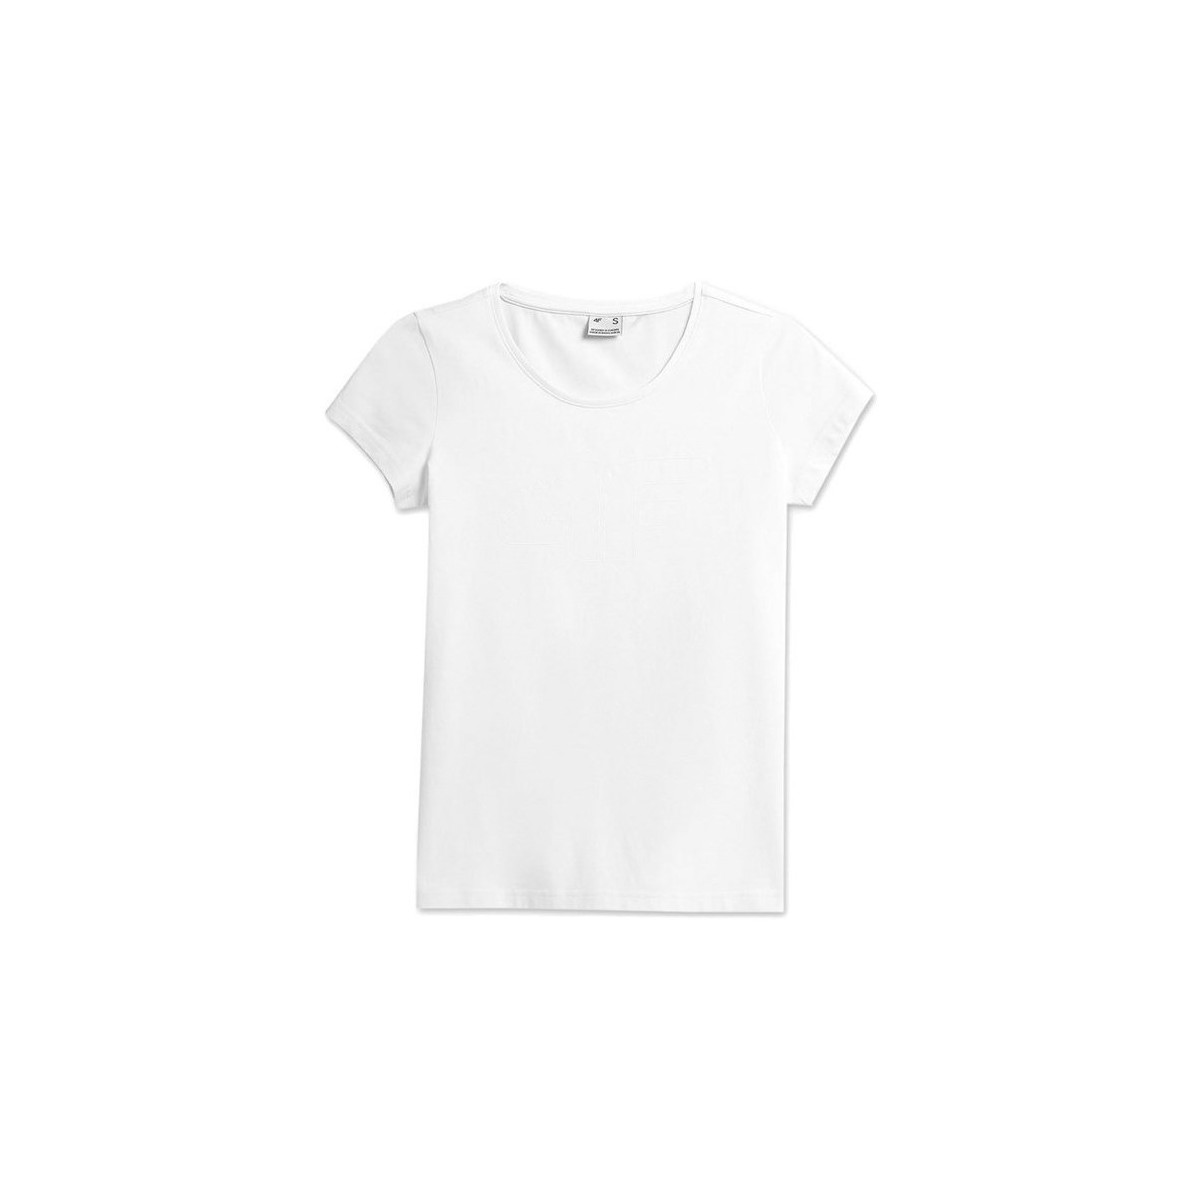 Textil Ženy Trička s krátkým rukávem 4F TSD353 Bílá